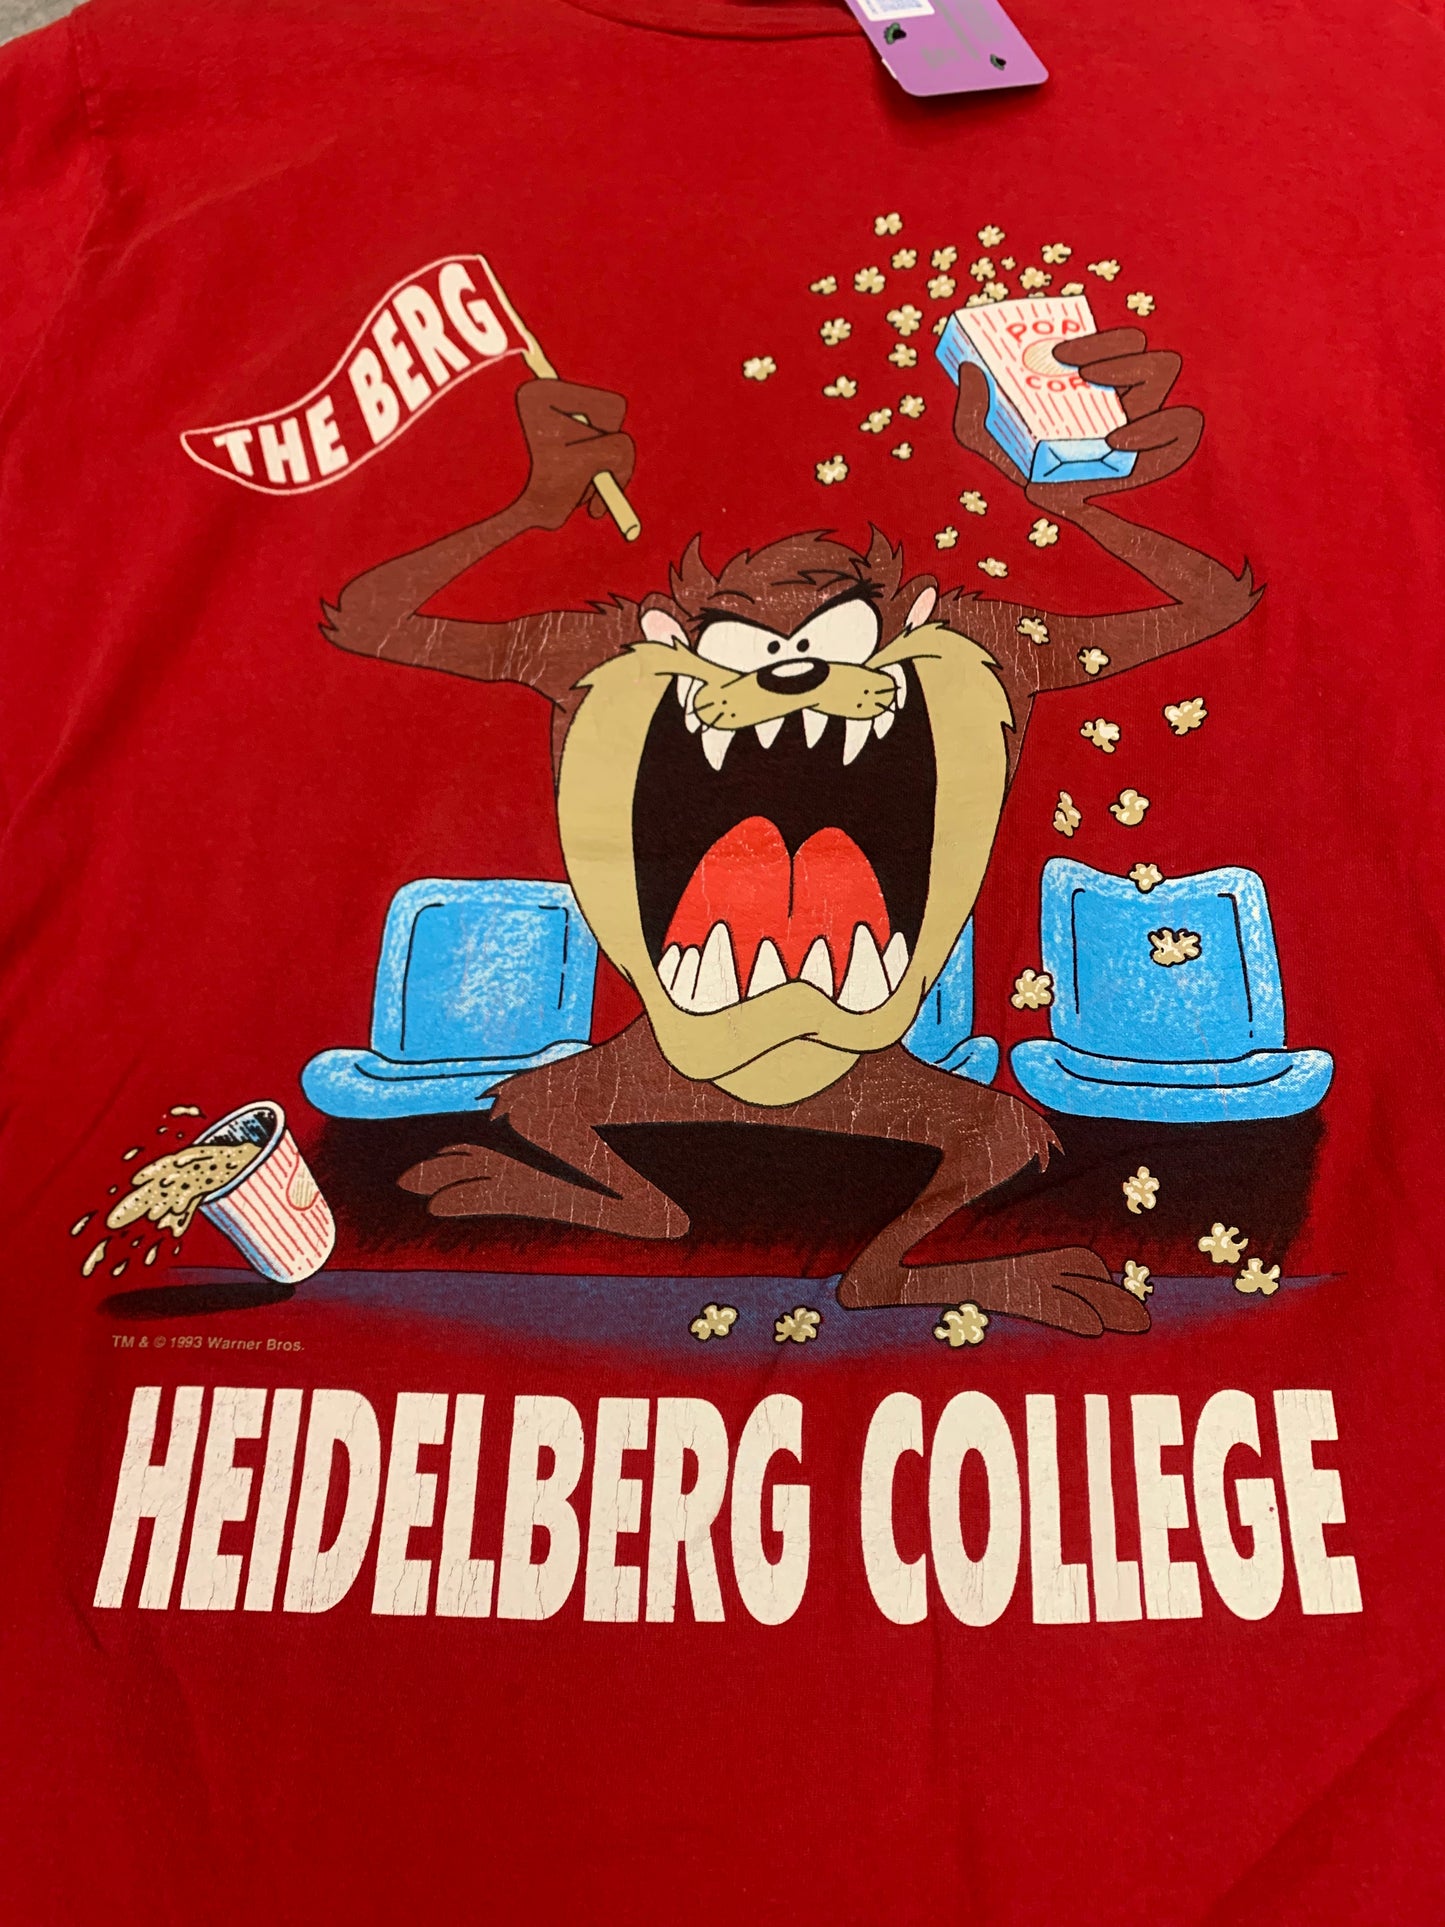 Vintage 1993 Heidelberg College tee